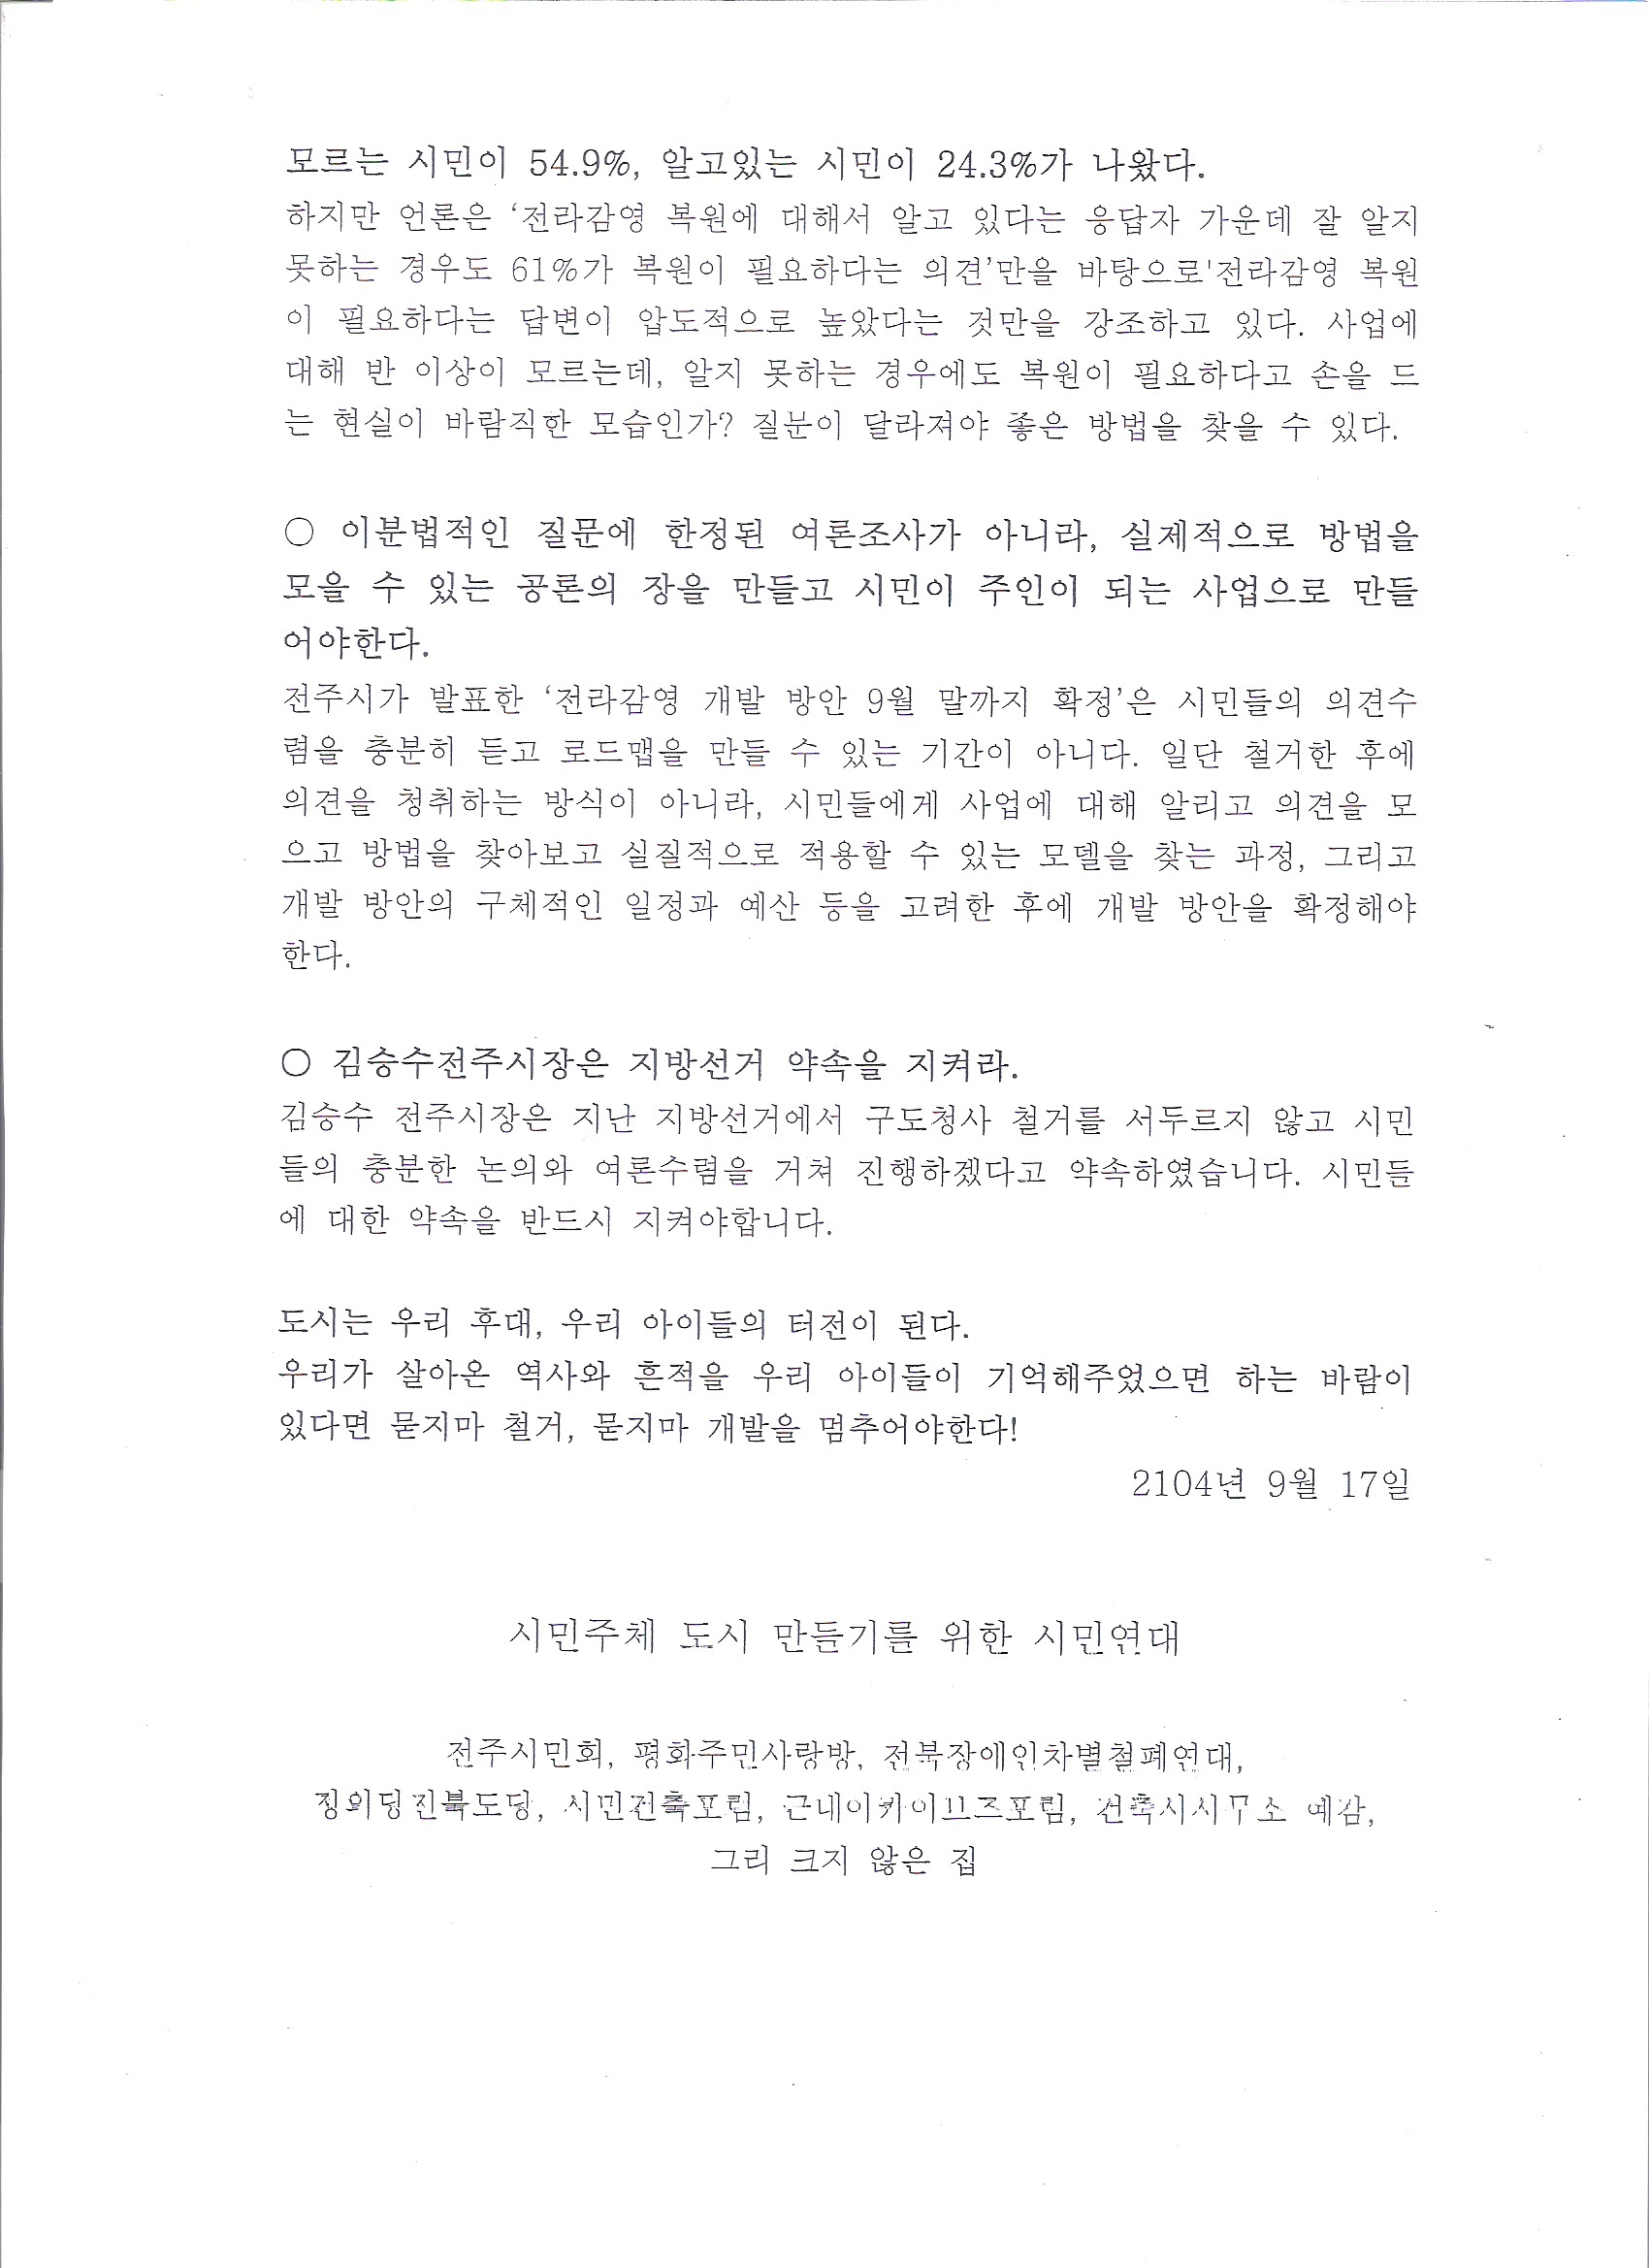 14.9.17_기자회견_전라북도구청사 철거 반대 성명서2-1.jpg